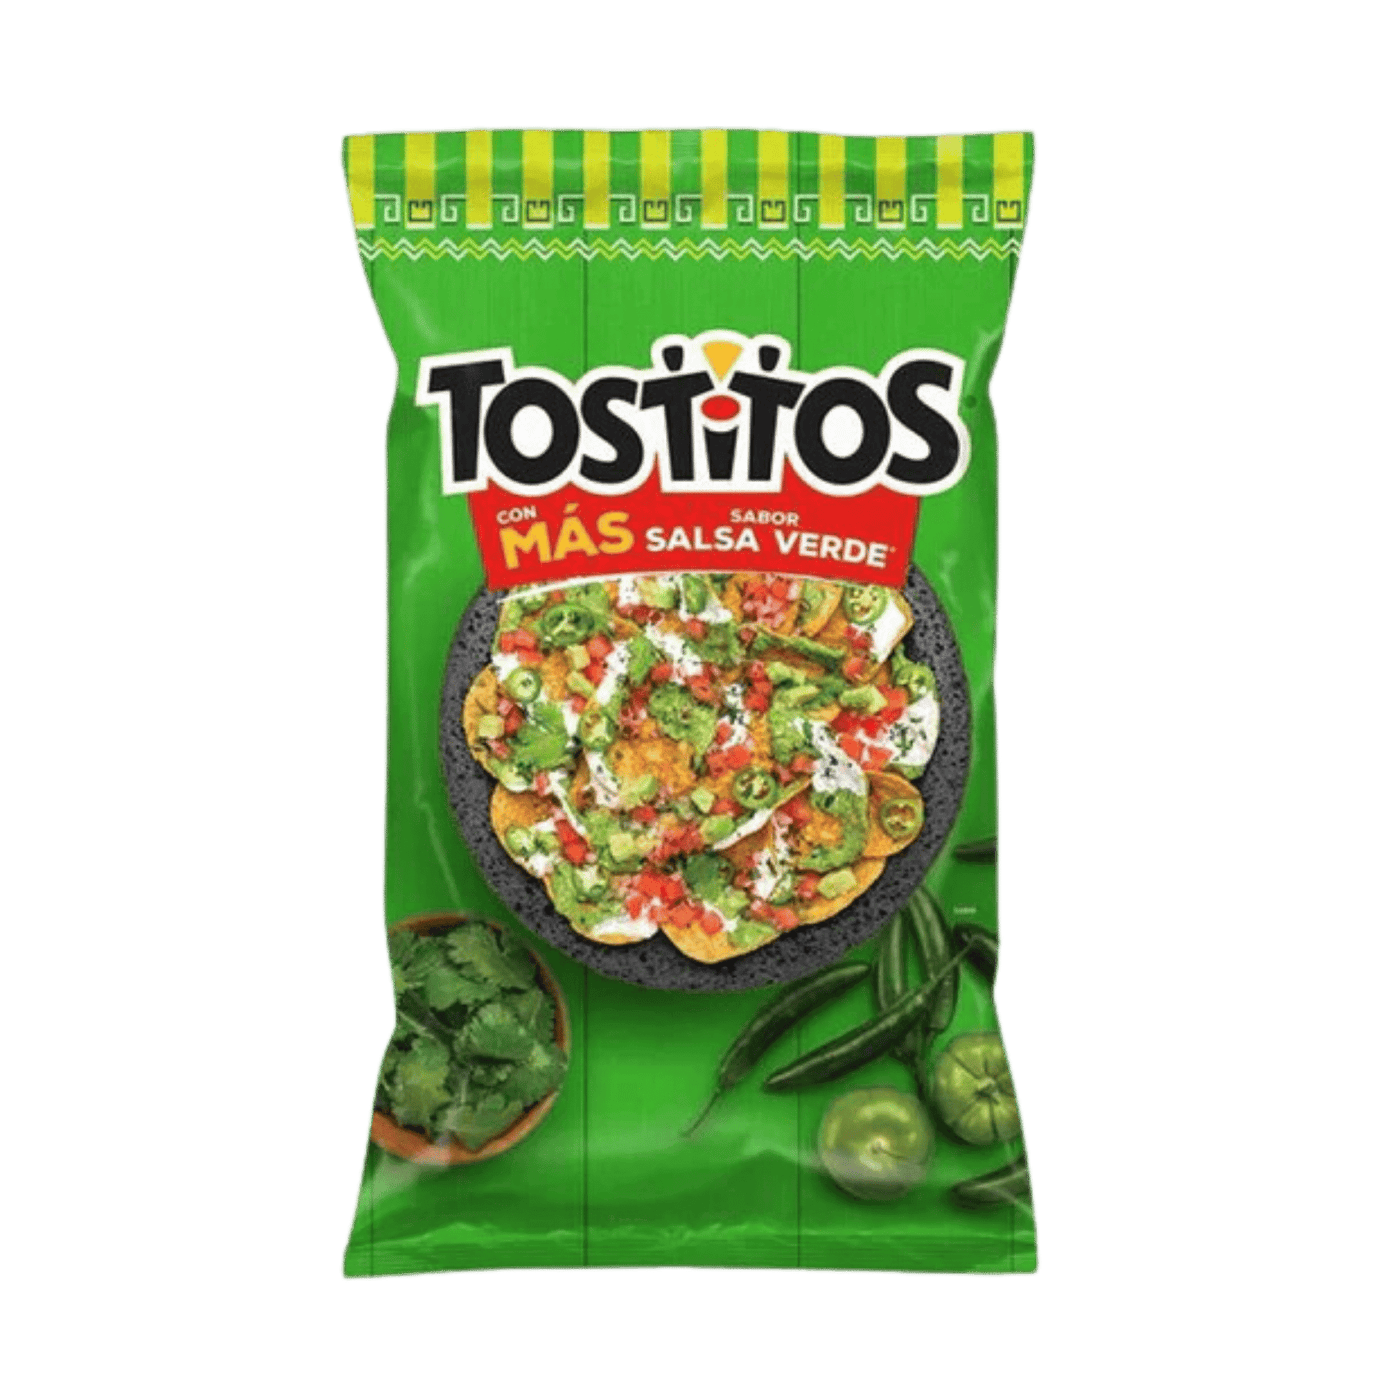 Tostitos - Salsa Verde - Mexico